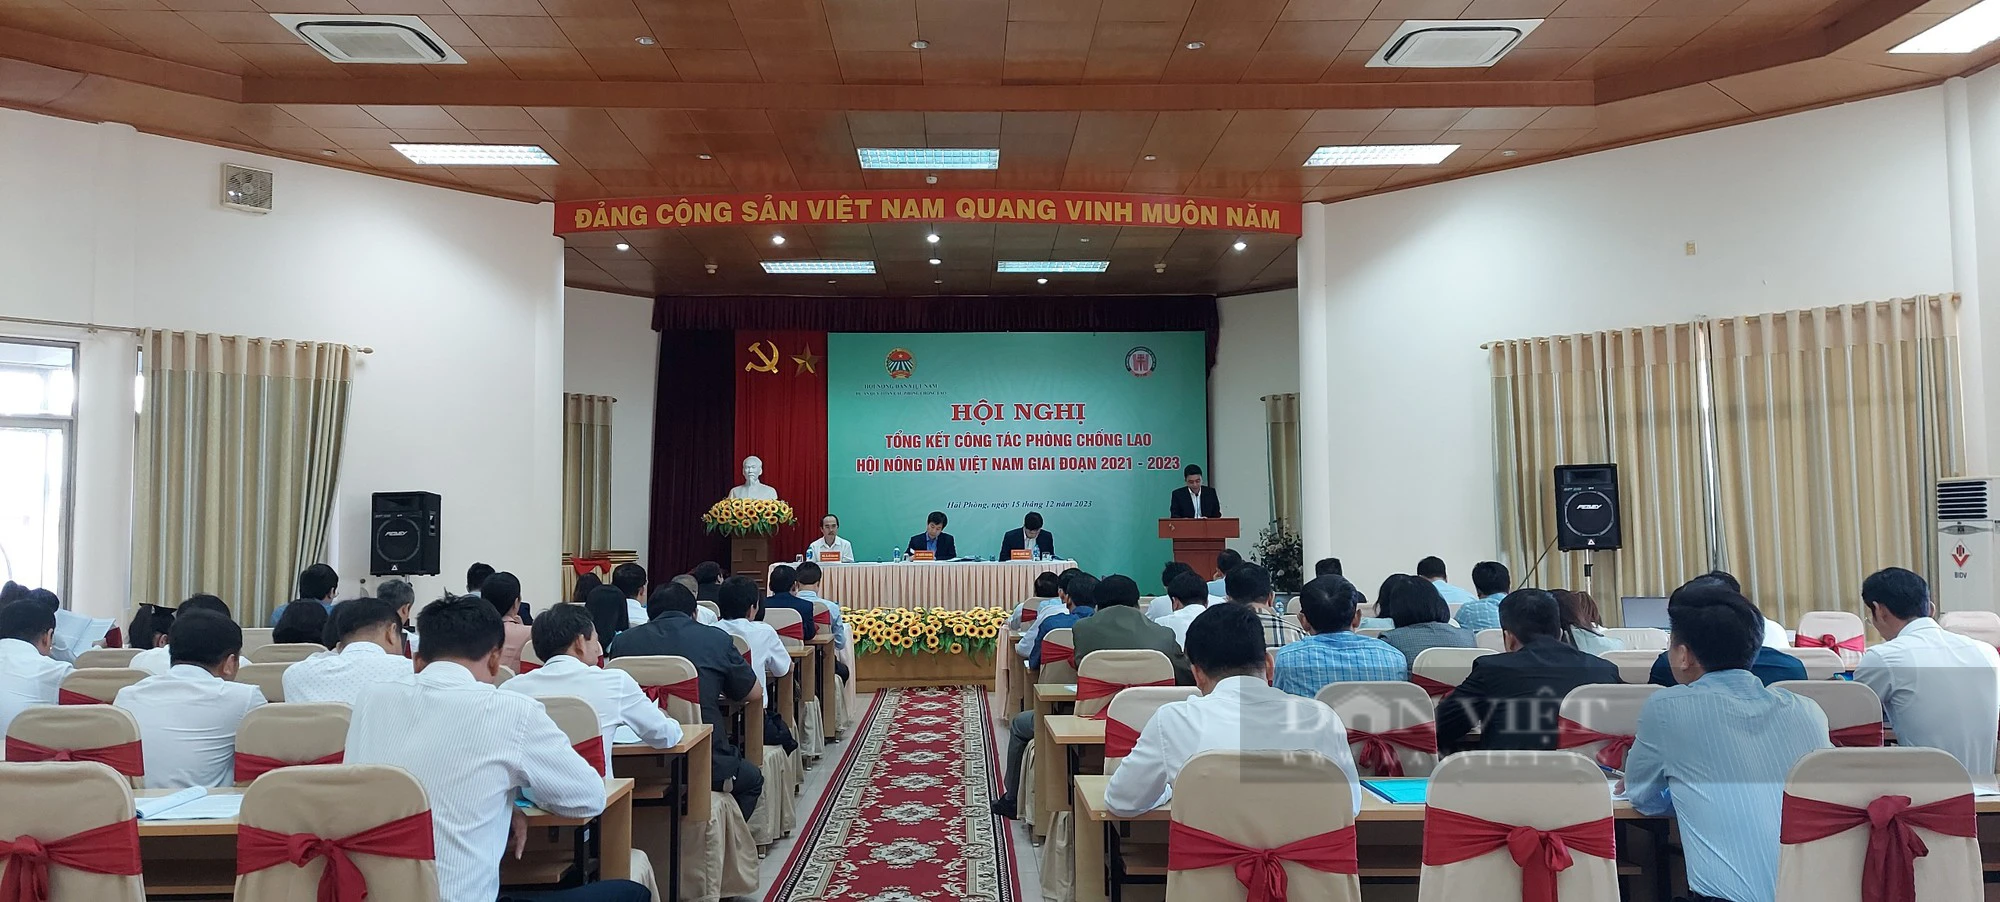 Trung ương Hội Nông dân Việt Nam tổng kết công tác phòng chống lao giai đoạn 2021 – 2023 - Ảnh 2.